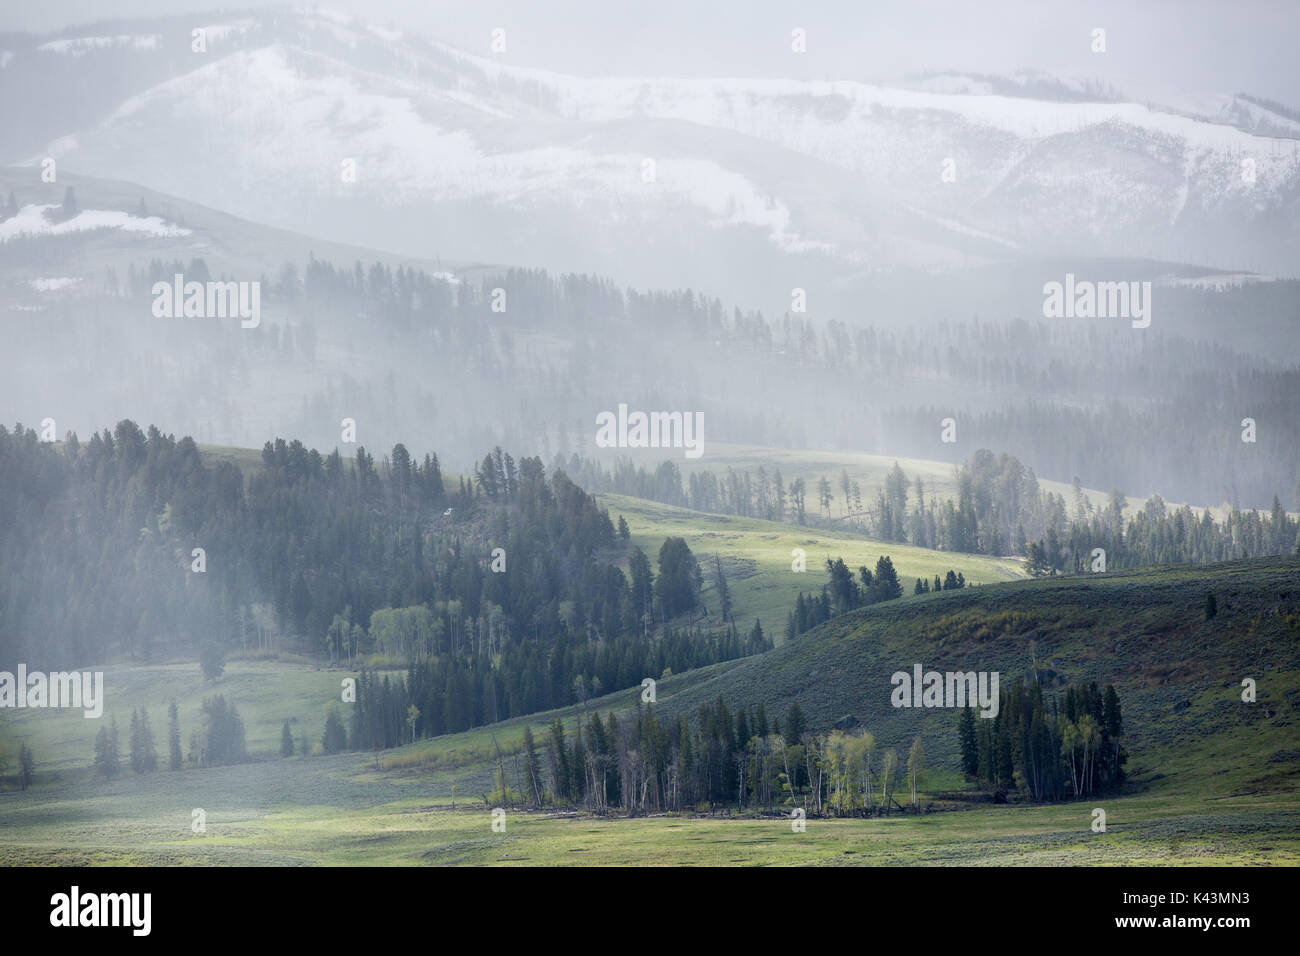 Eine Feder regen Sturm deckt die üppigen Lamar Valley in einem feinen Nebel an der Yellowstone National Park 22. Mai 2016 in der Nähe von fossilen Wald, Wyoming. (Foto von Neal Herbert über Planetpix) Stockfoto